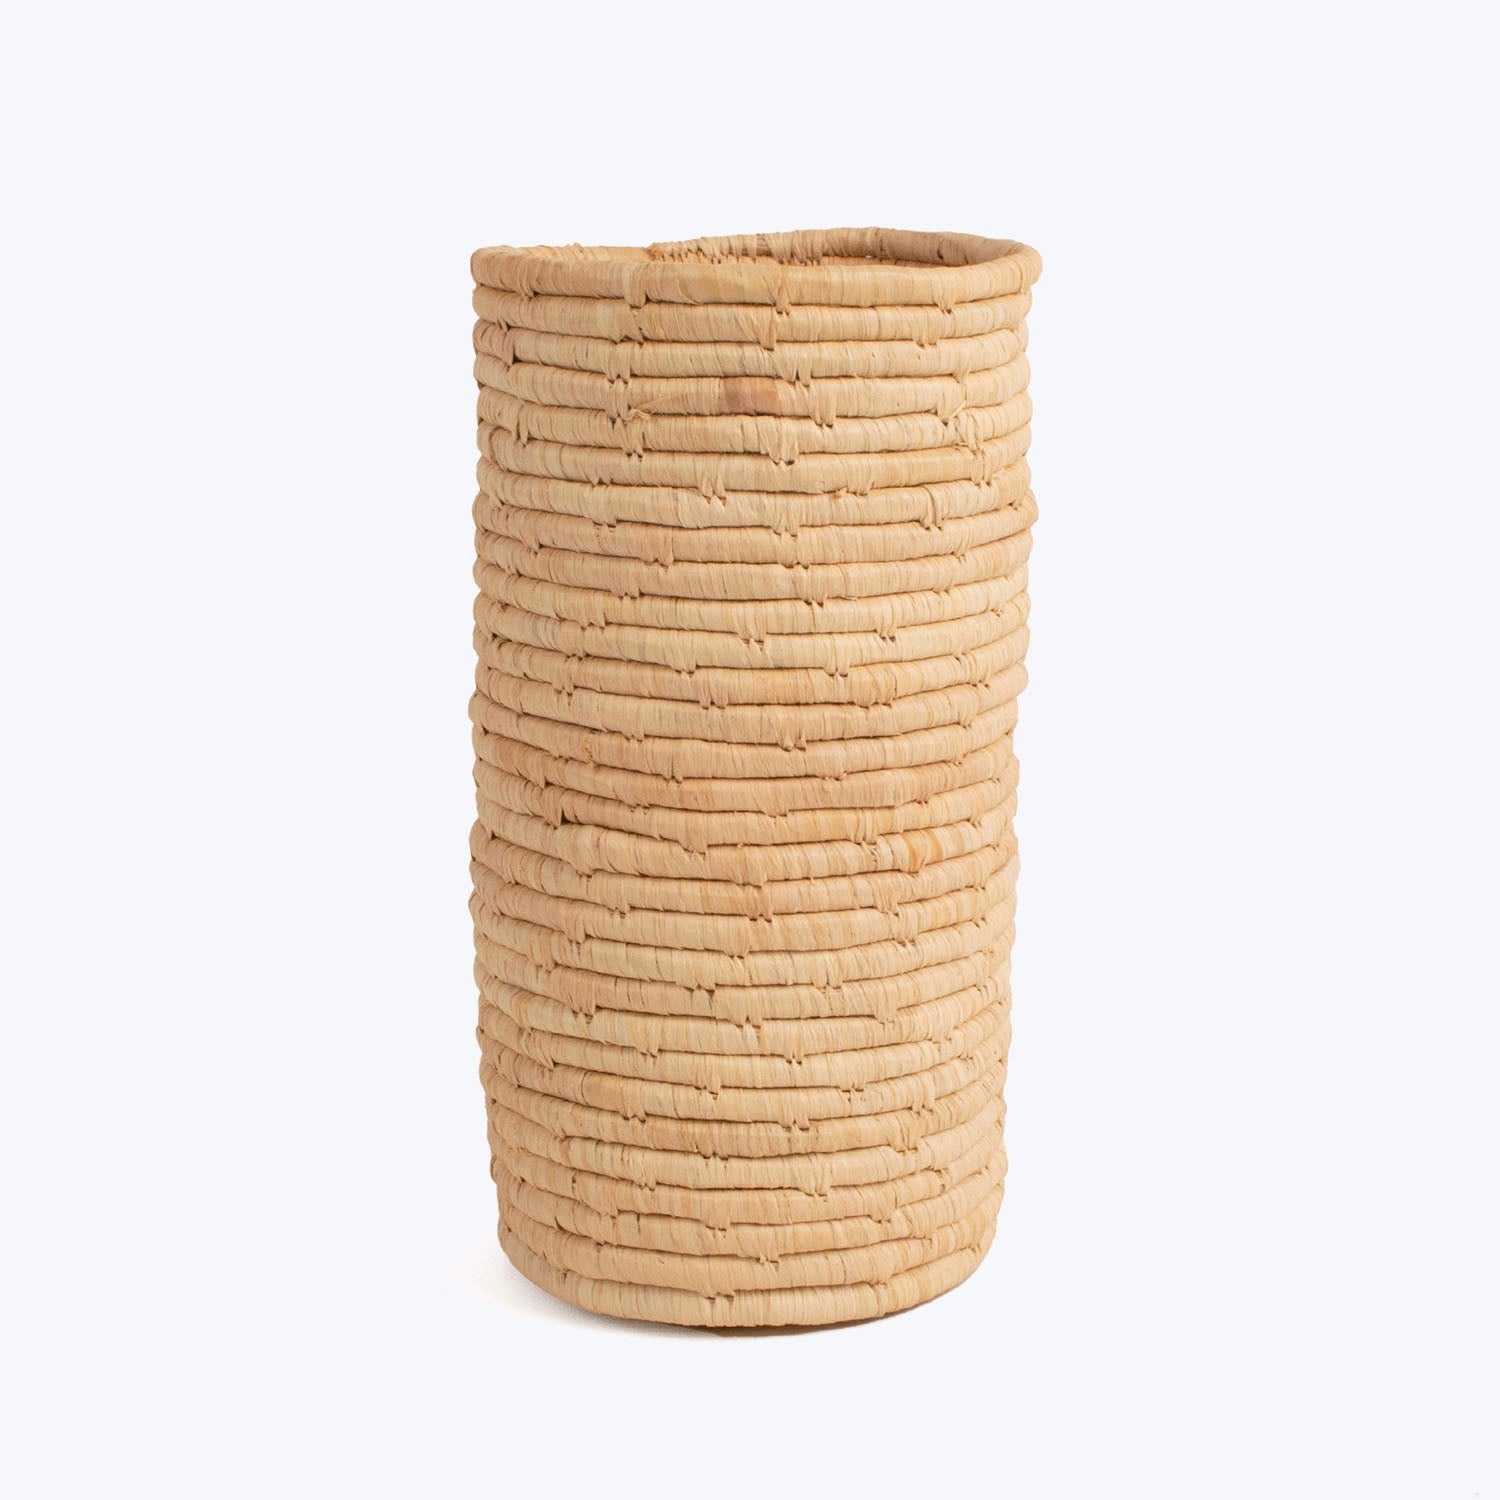 Stone Vessel - 8" Natural Cylindrical Vase Default Title